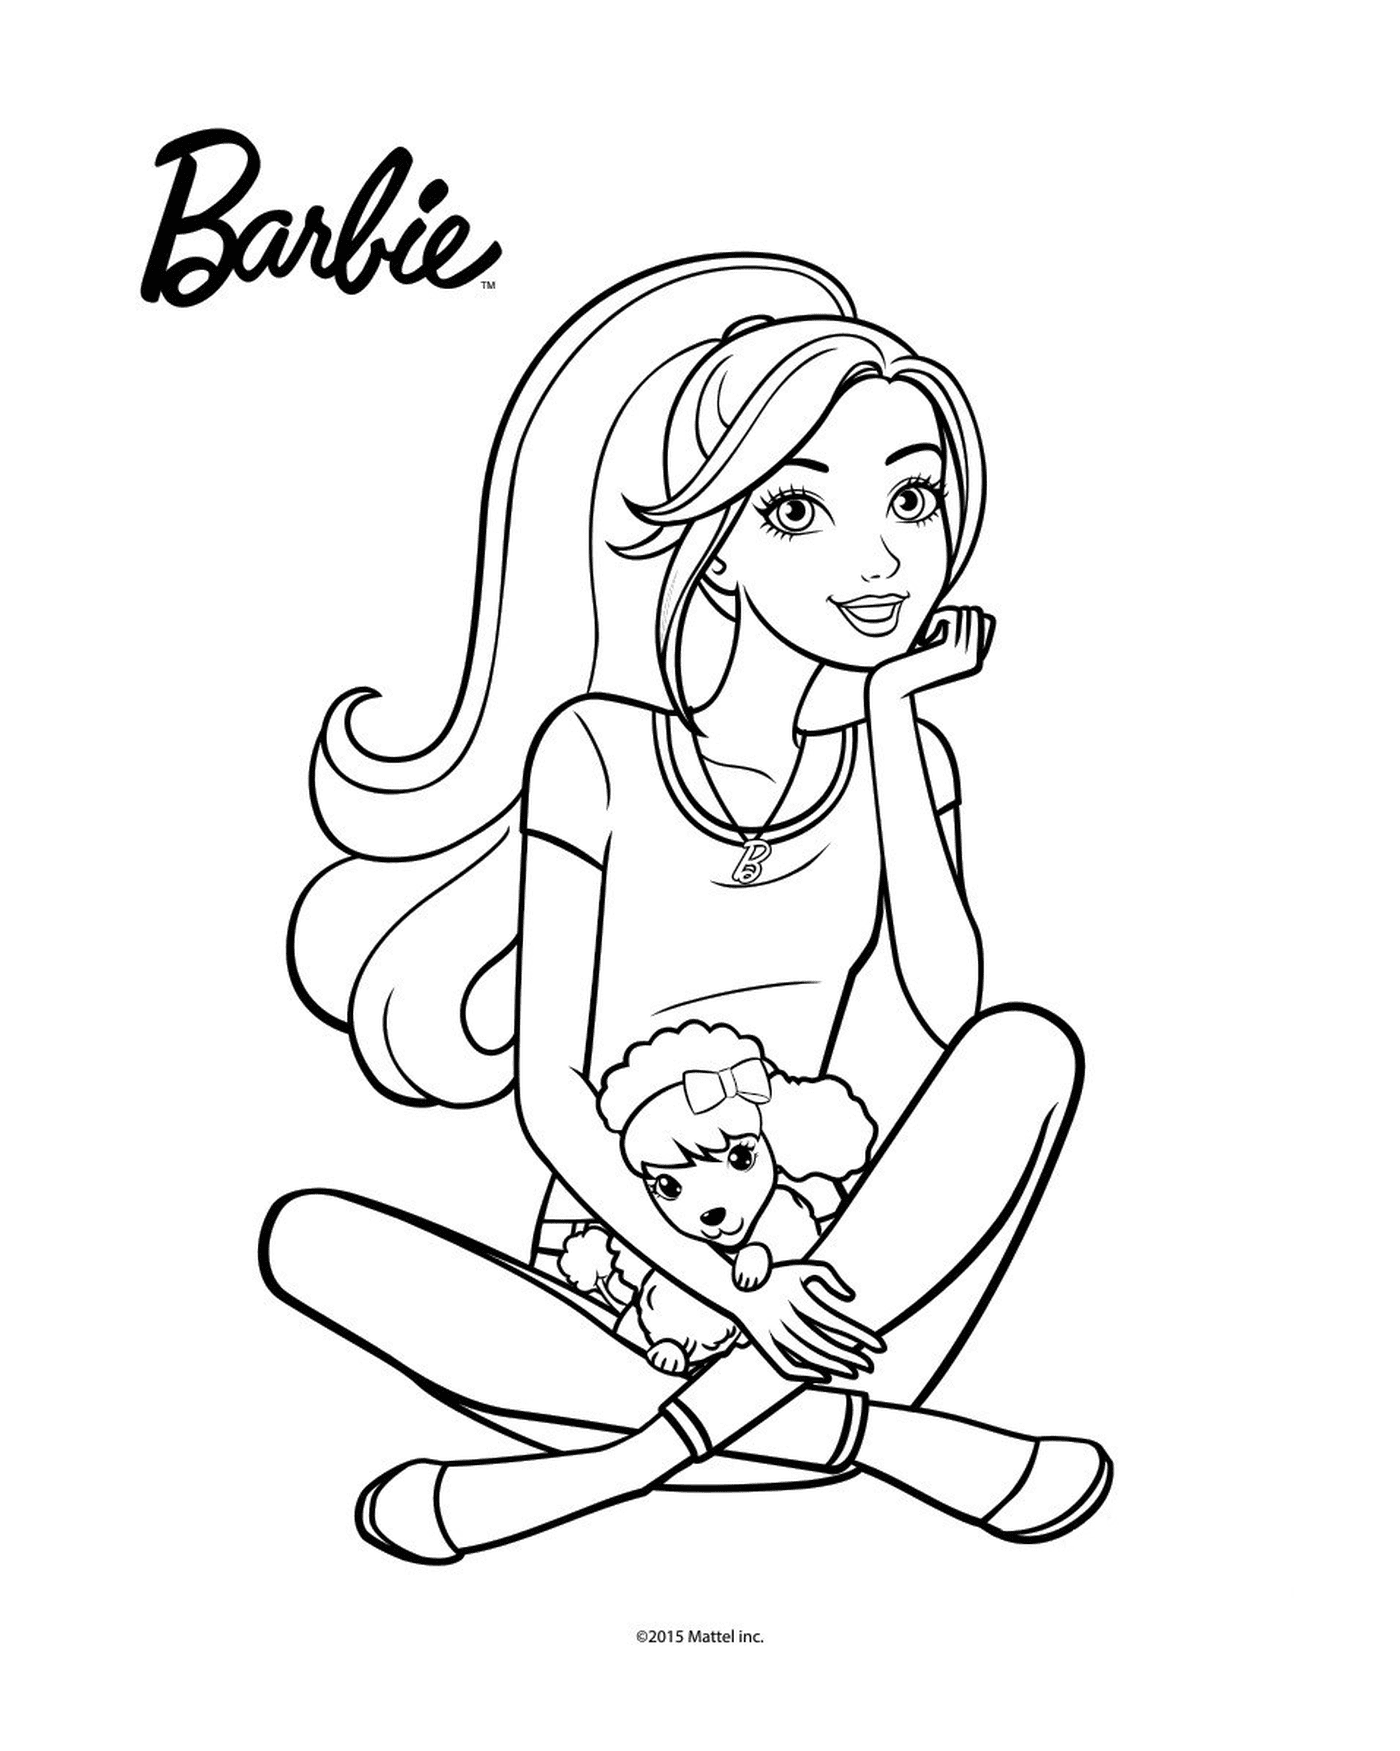  Barbie seduto sul pavimento che tiene una bambola 